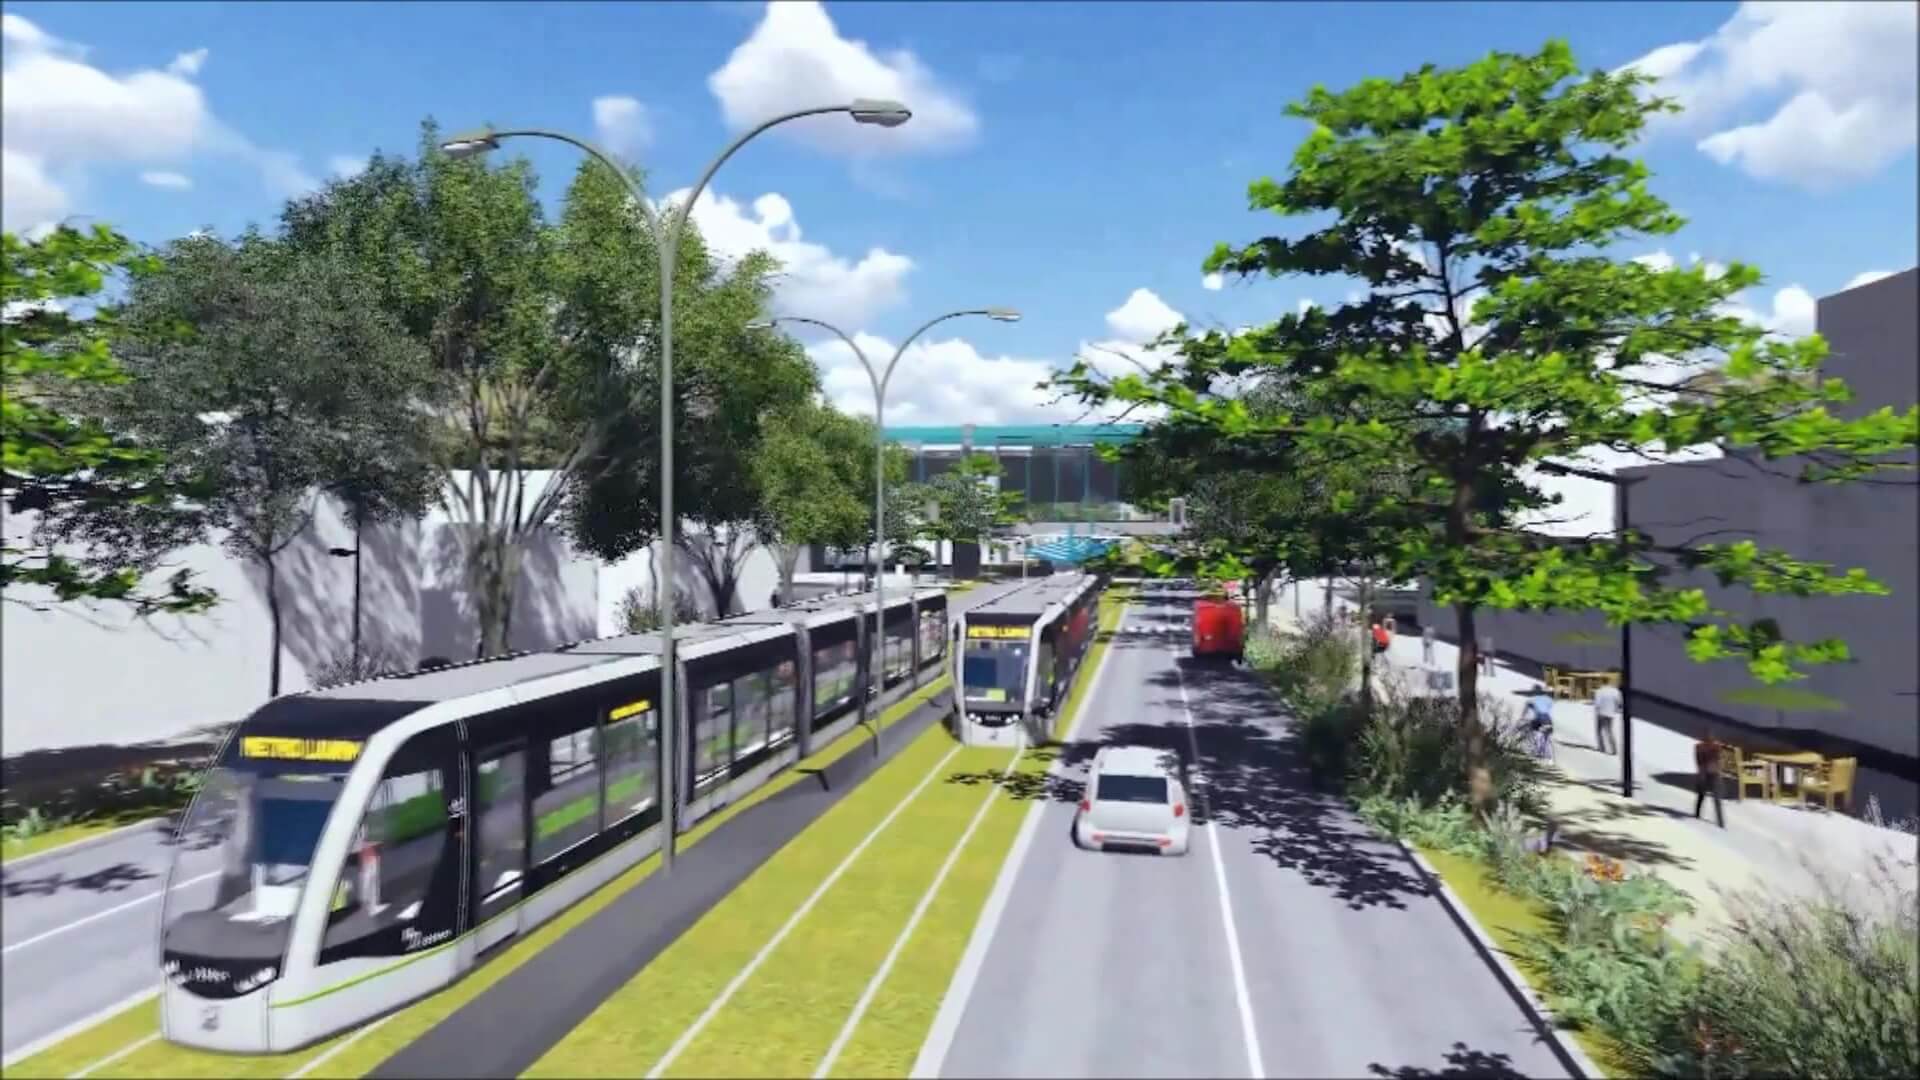 Metro de la 80 tendrá conexión eléctrica hasta 2050